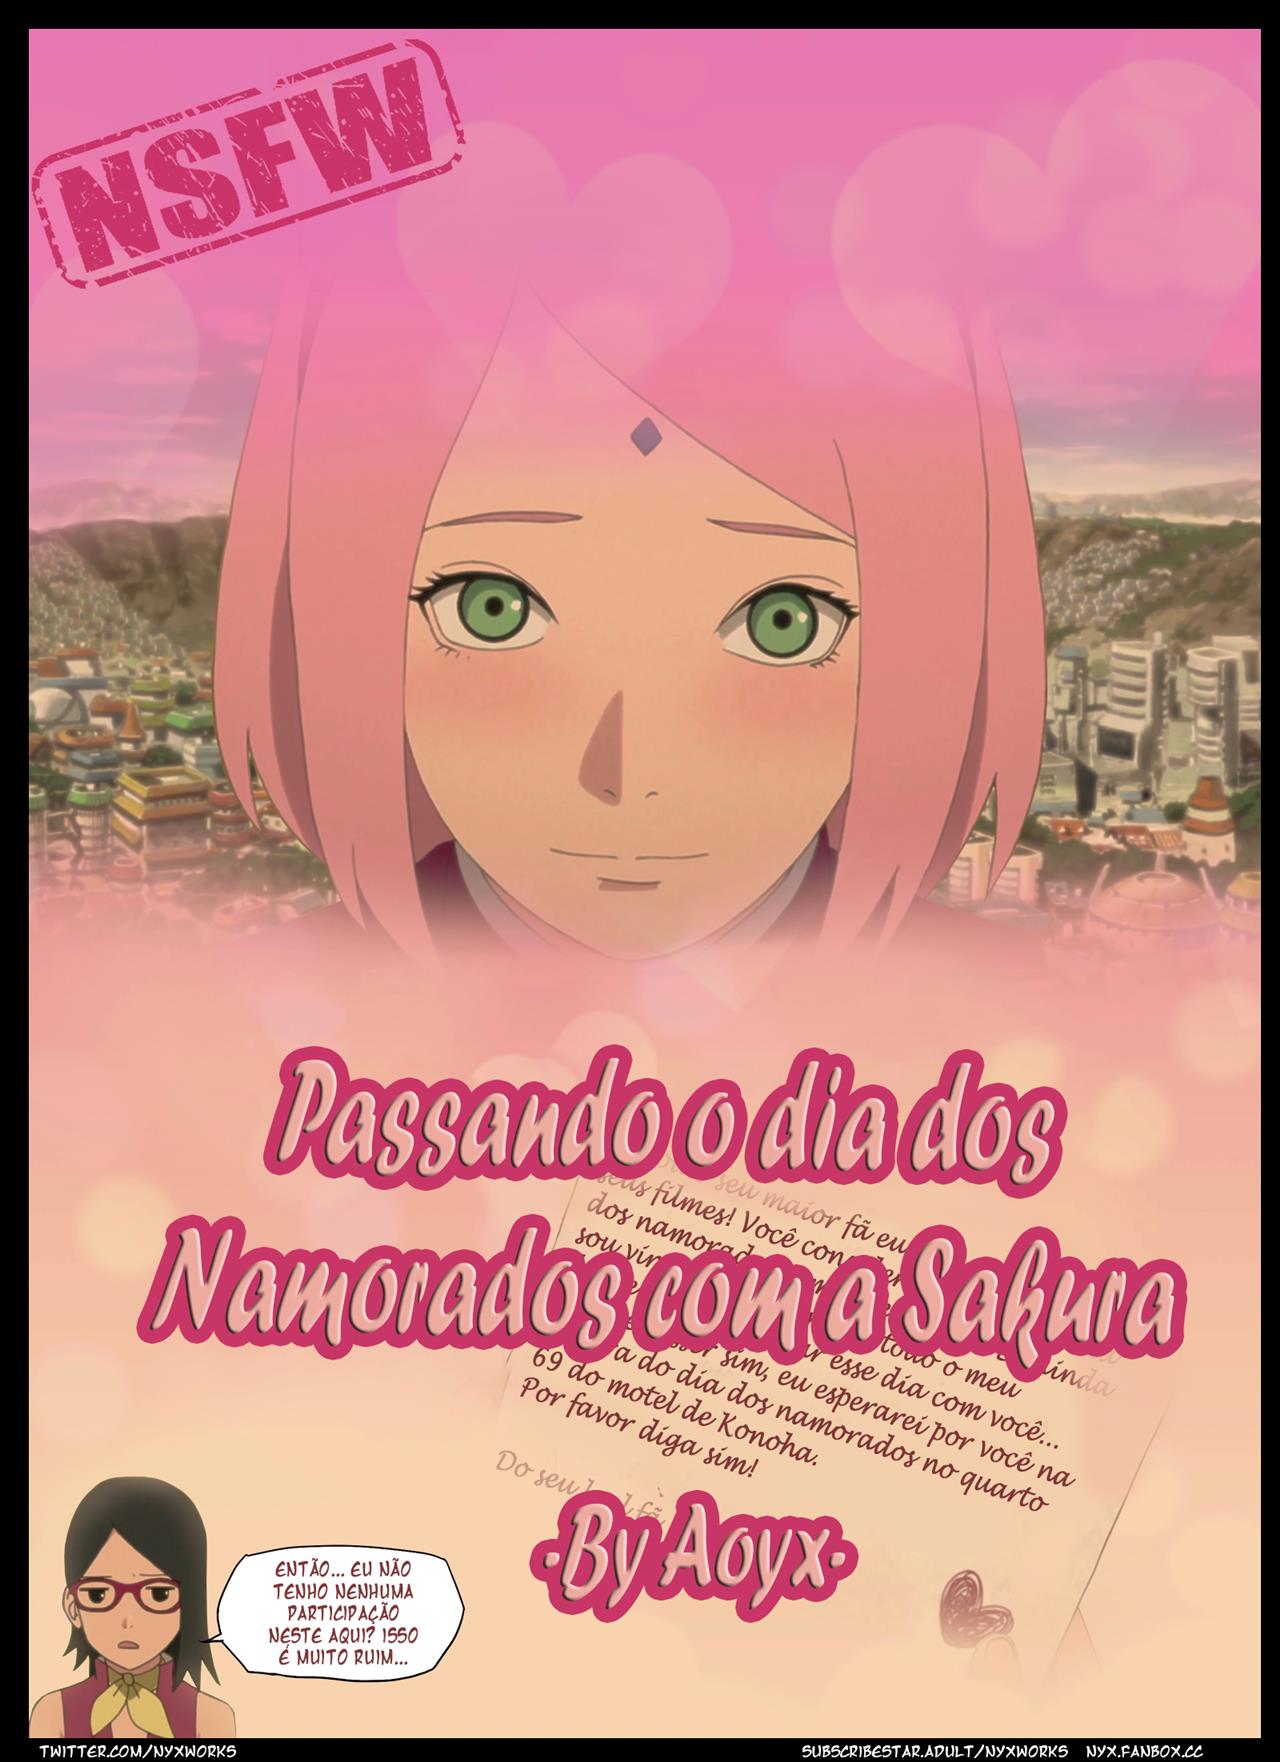 Passando o Dia dos Namorados com a Sakura